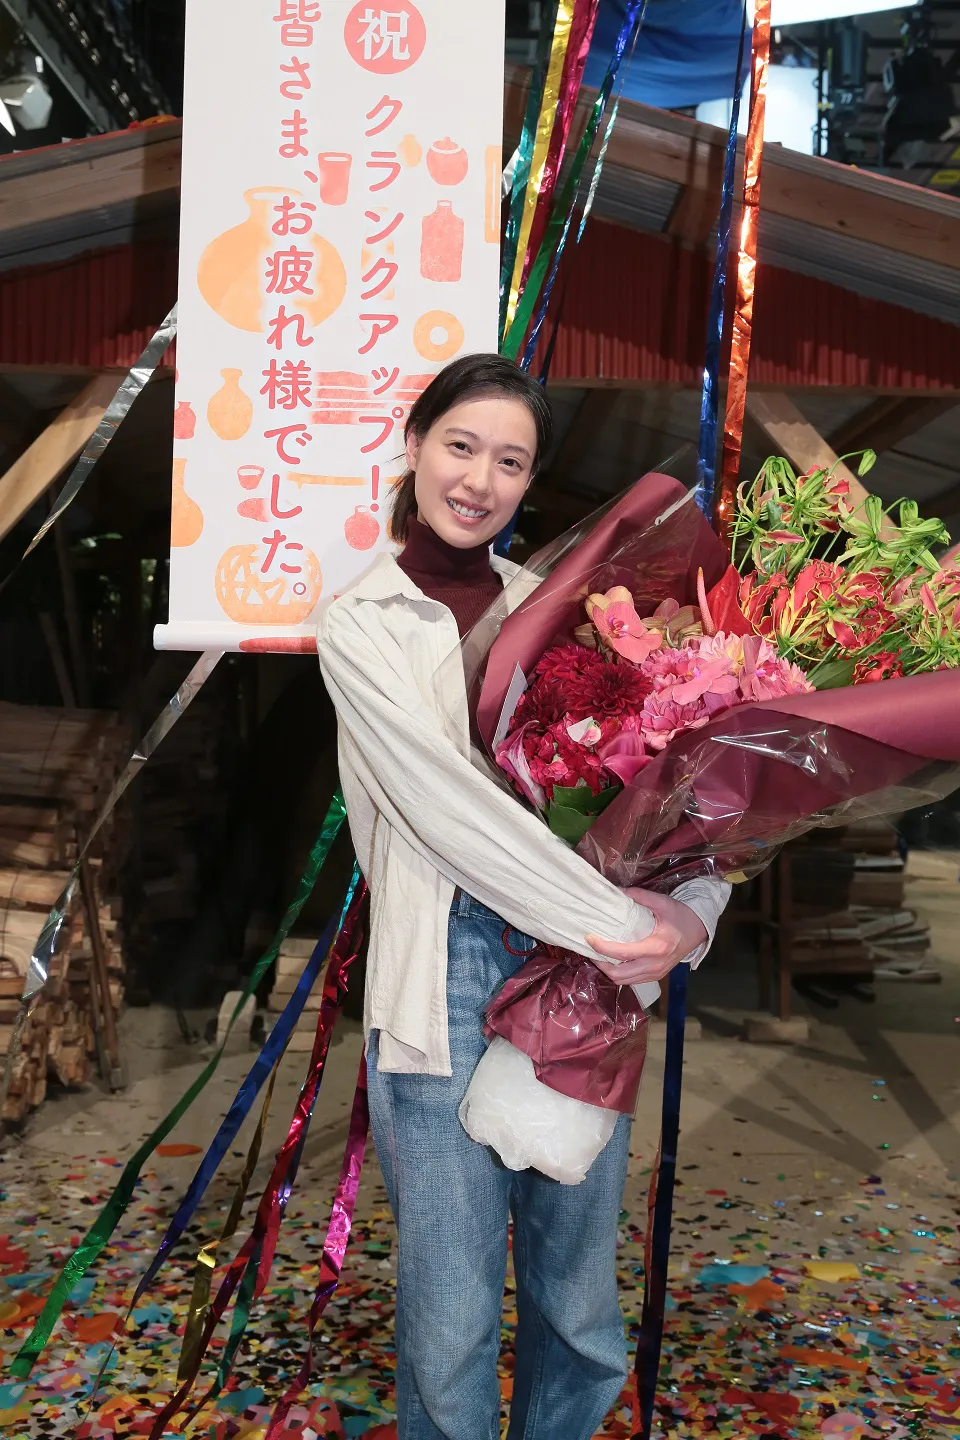 【写真を見る】クランクアップを迎え、美しい花束を抱える戸田恵梨香